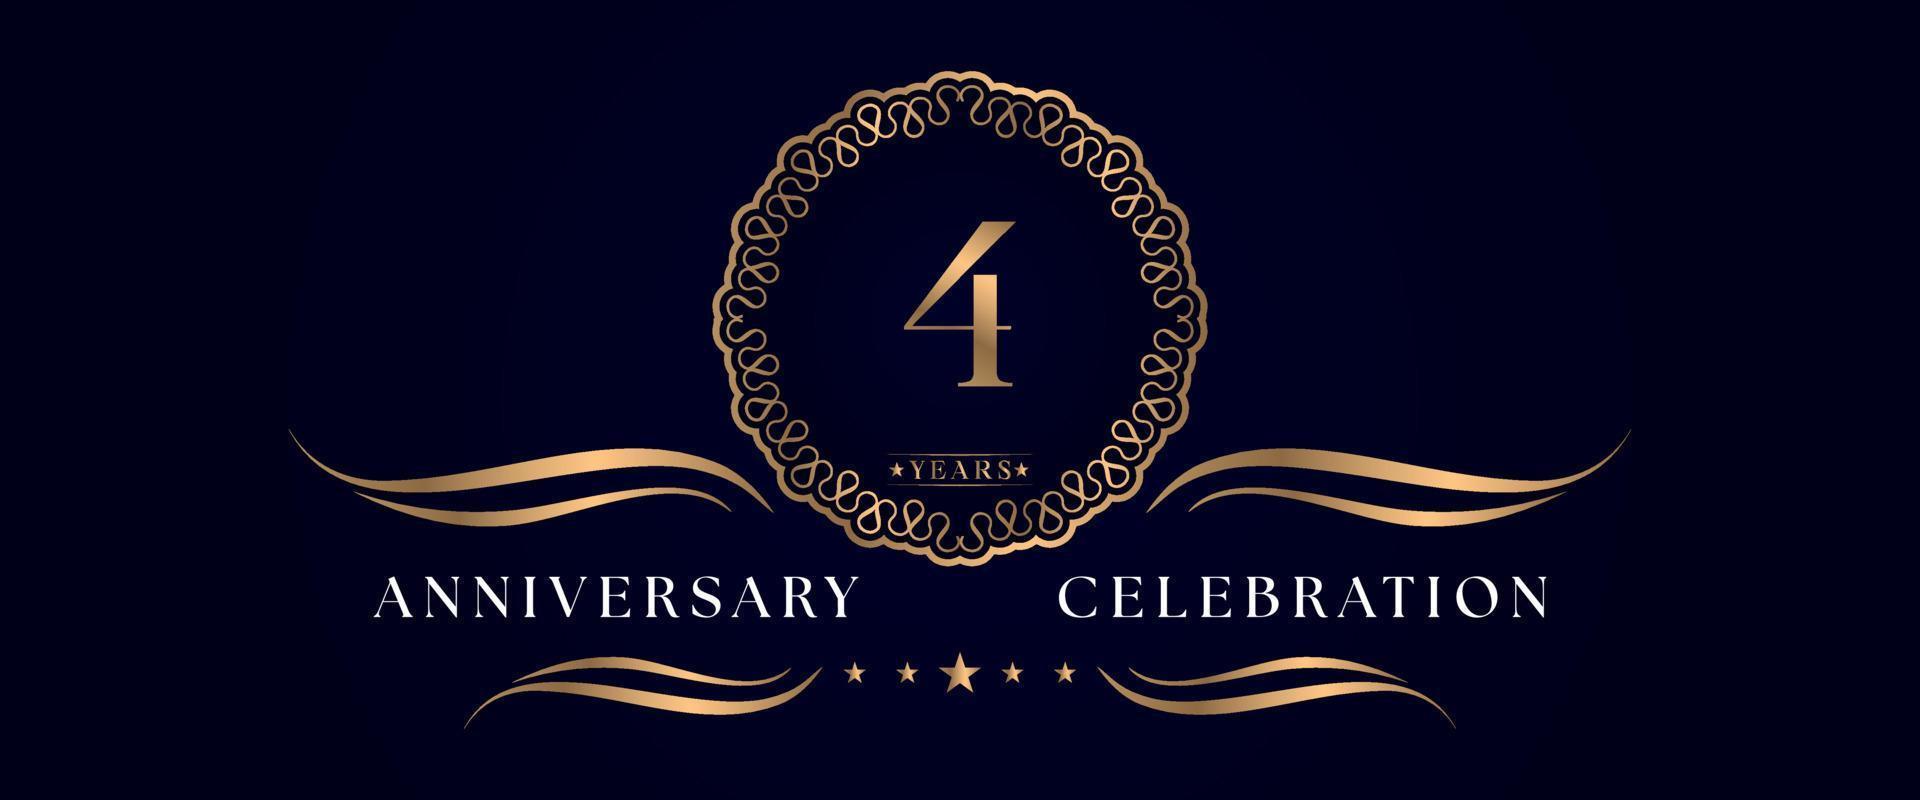 Celebrazione dell'anniversario di 4 anni con elegante cornice circolare isolata su sfondo blu scuro. disegno vettoriale per biglietto di auguri, festa di compleanno, matrimonio, festa evento, cerimonia. Logo dell'anniversario di 4 anni.